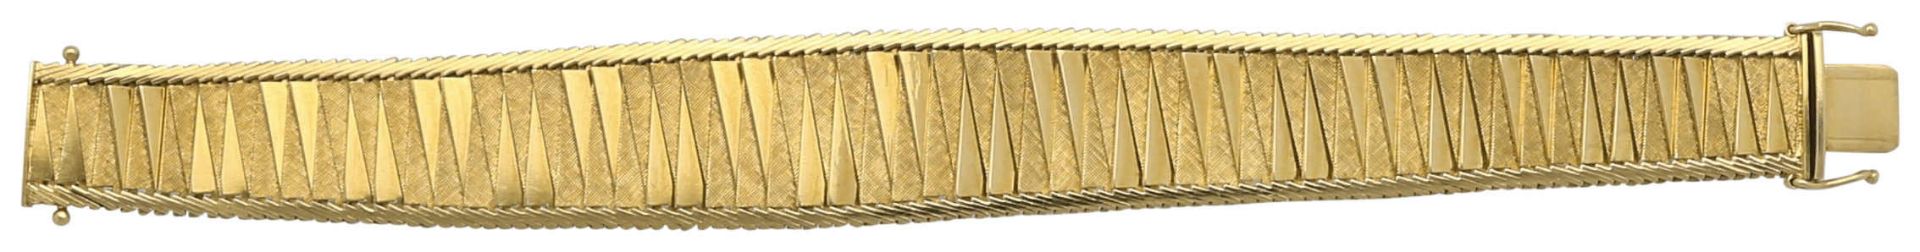 Gold-Armband Fantasievolles und sehr dekoratives Armband in Gelbgold 18K. Alternierend polierte und